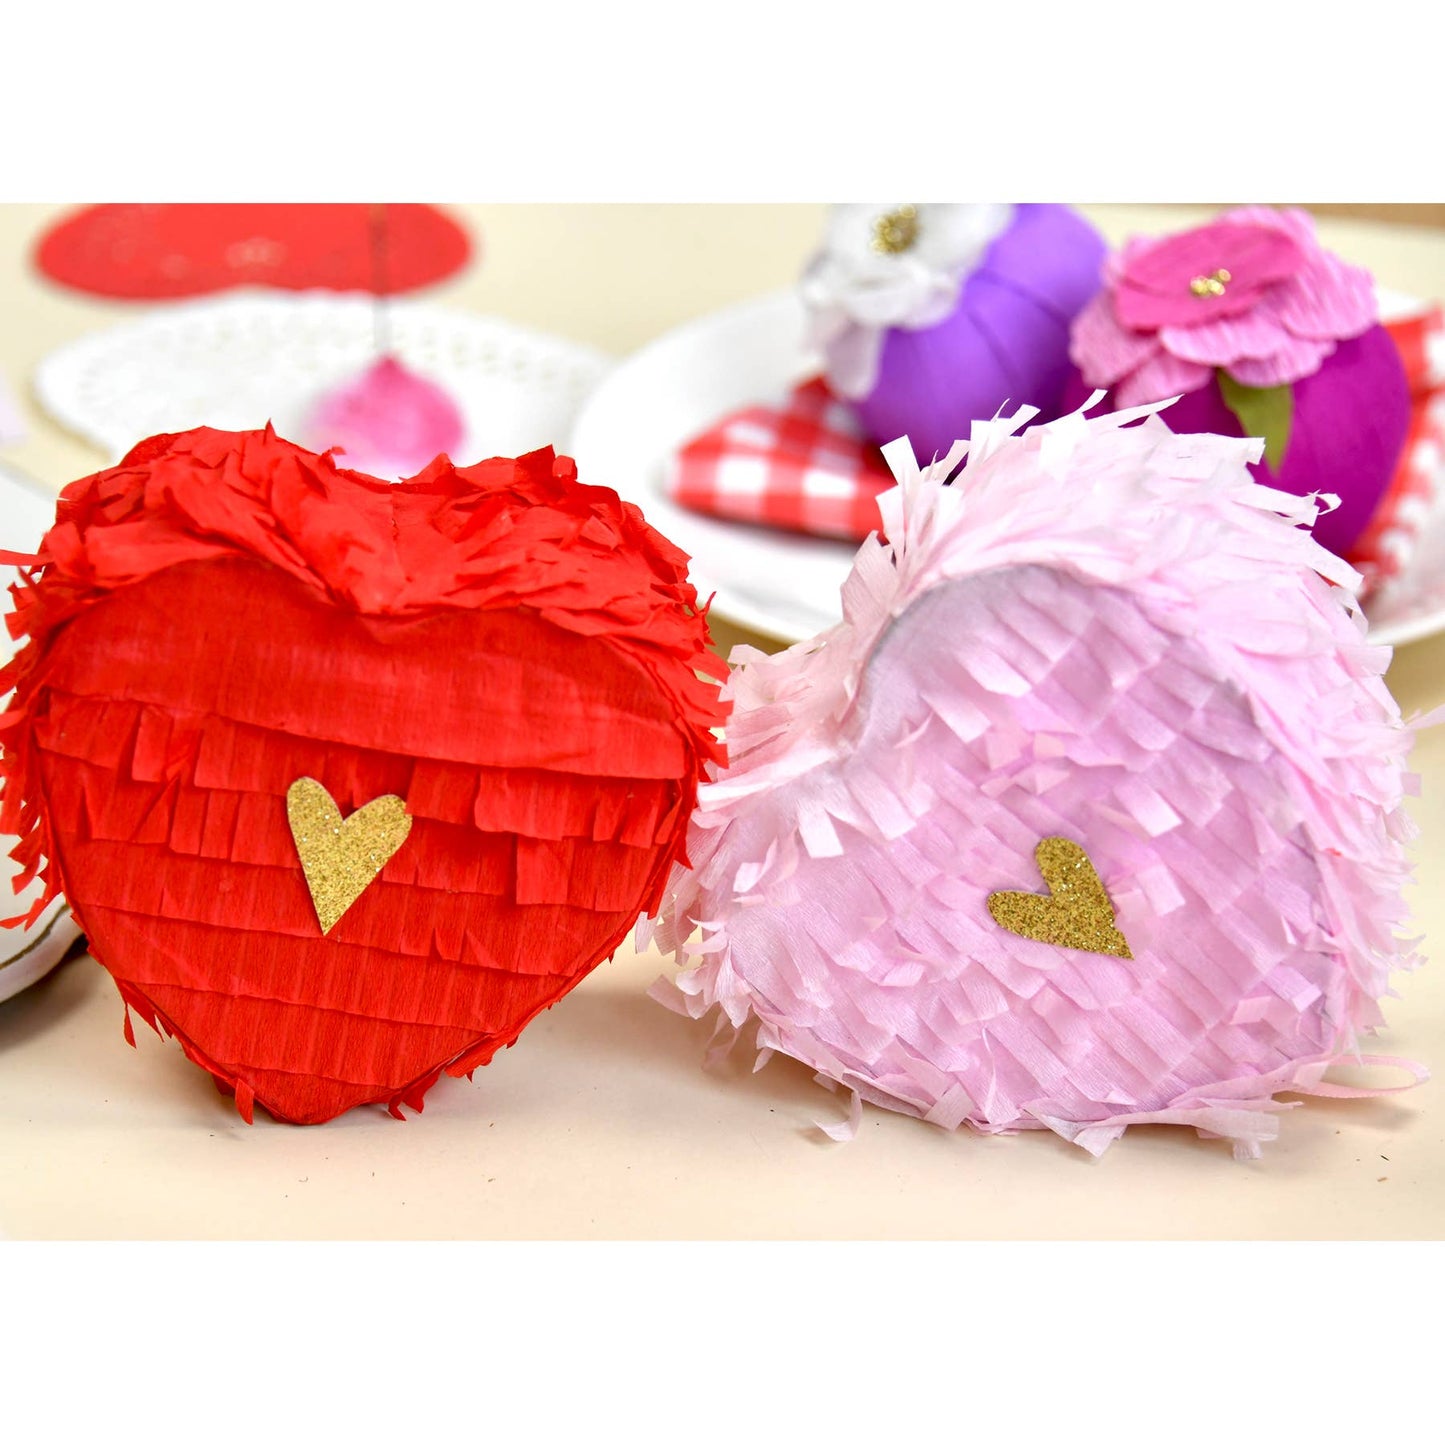 Mini Pinata - Tabletop Heart Piñata